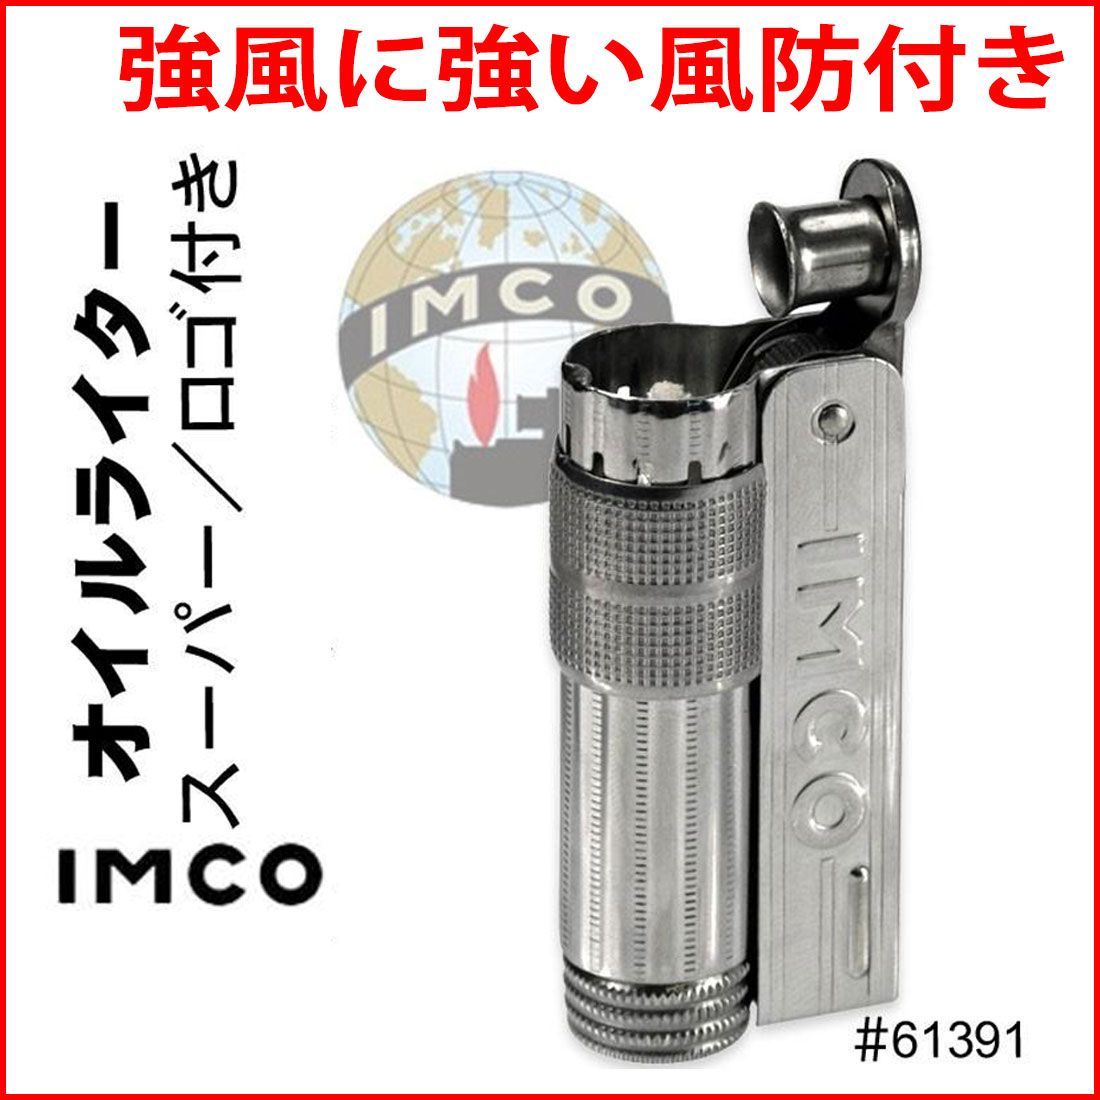 イムコ ライター イムコスーパー SUPER 6700P IMCO ライター イムコ